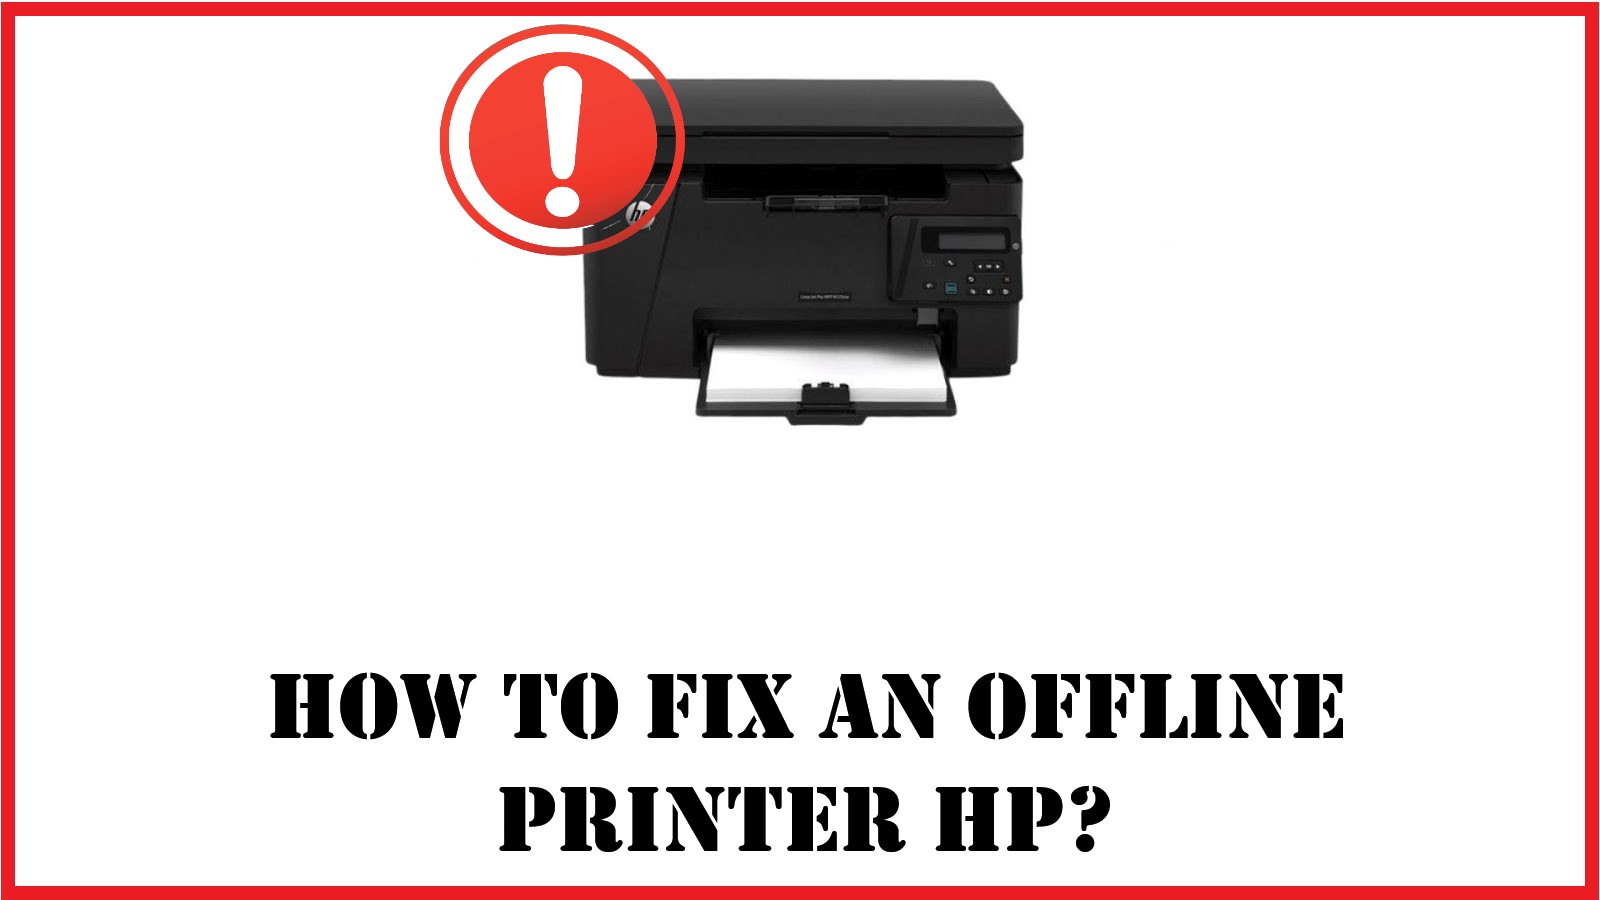 How to fix an offline printer hp?